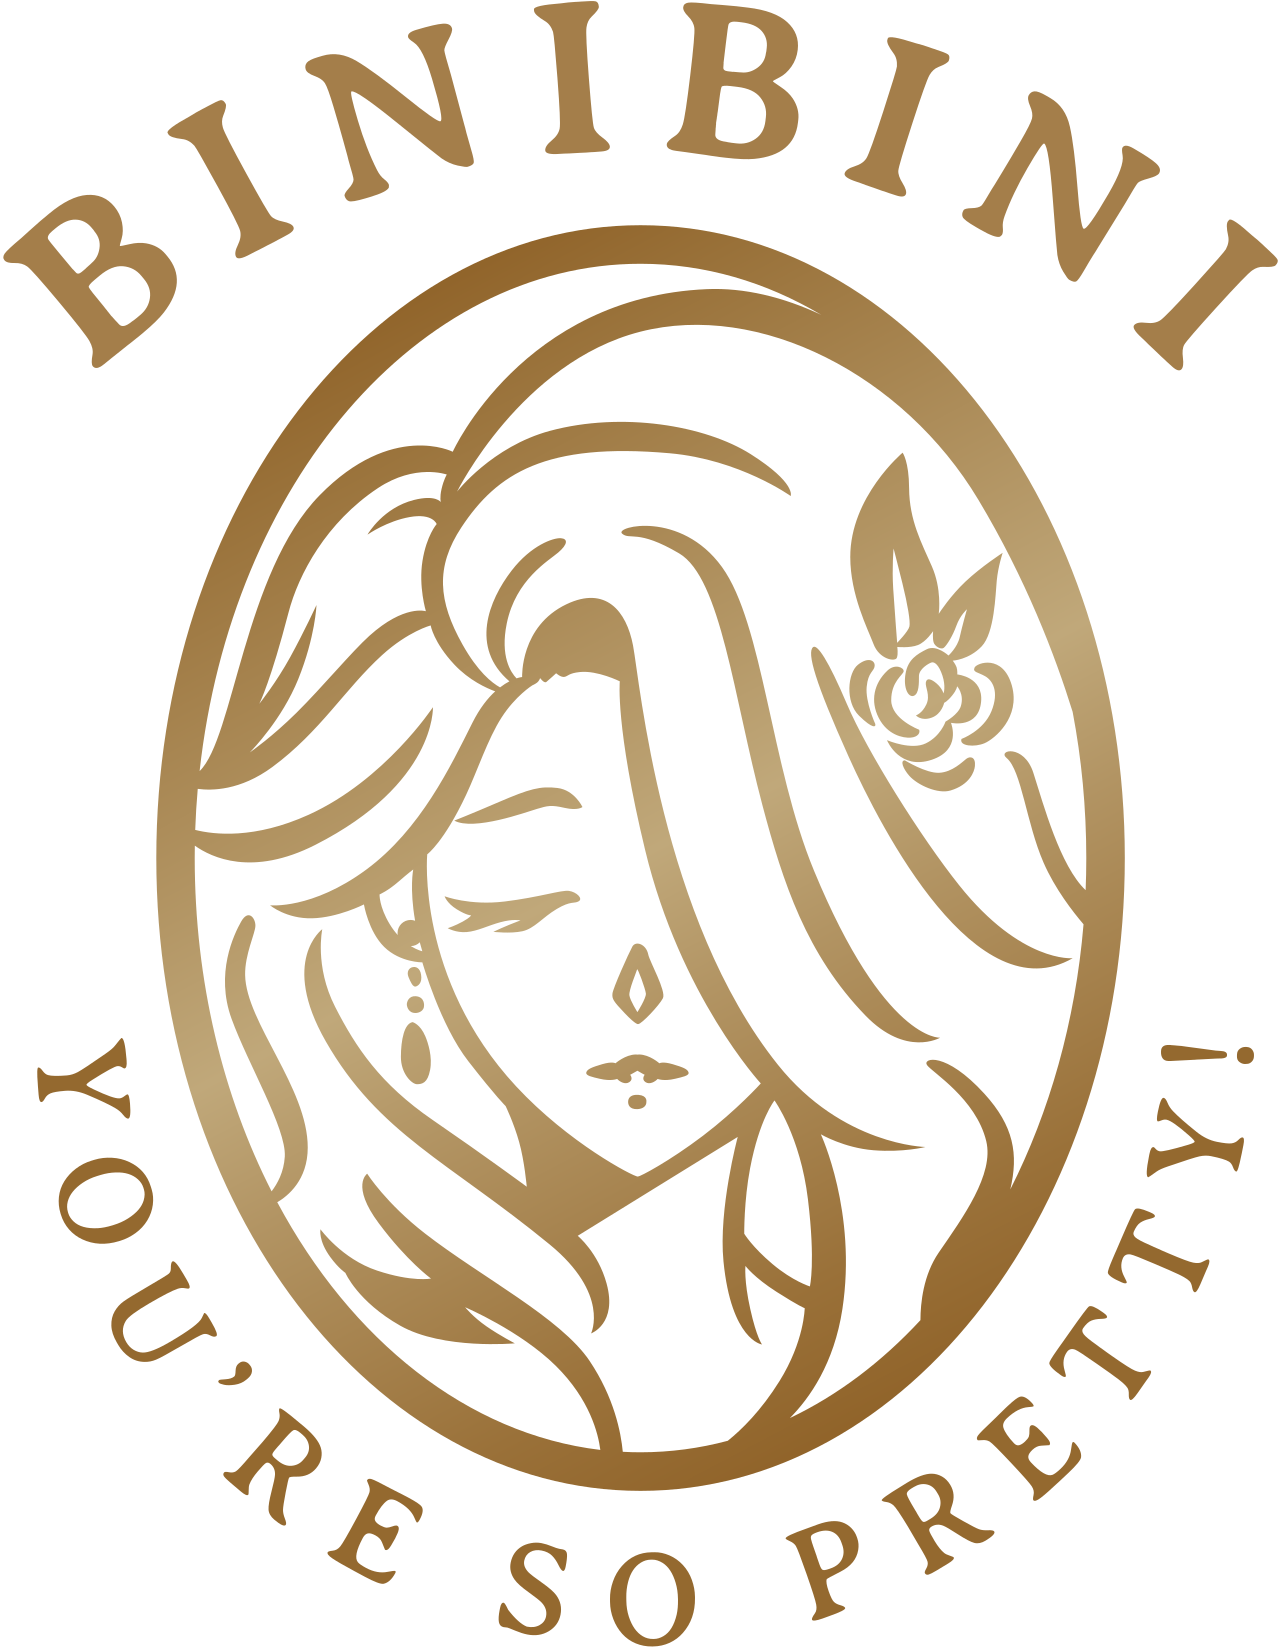 BINIBINI's logo